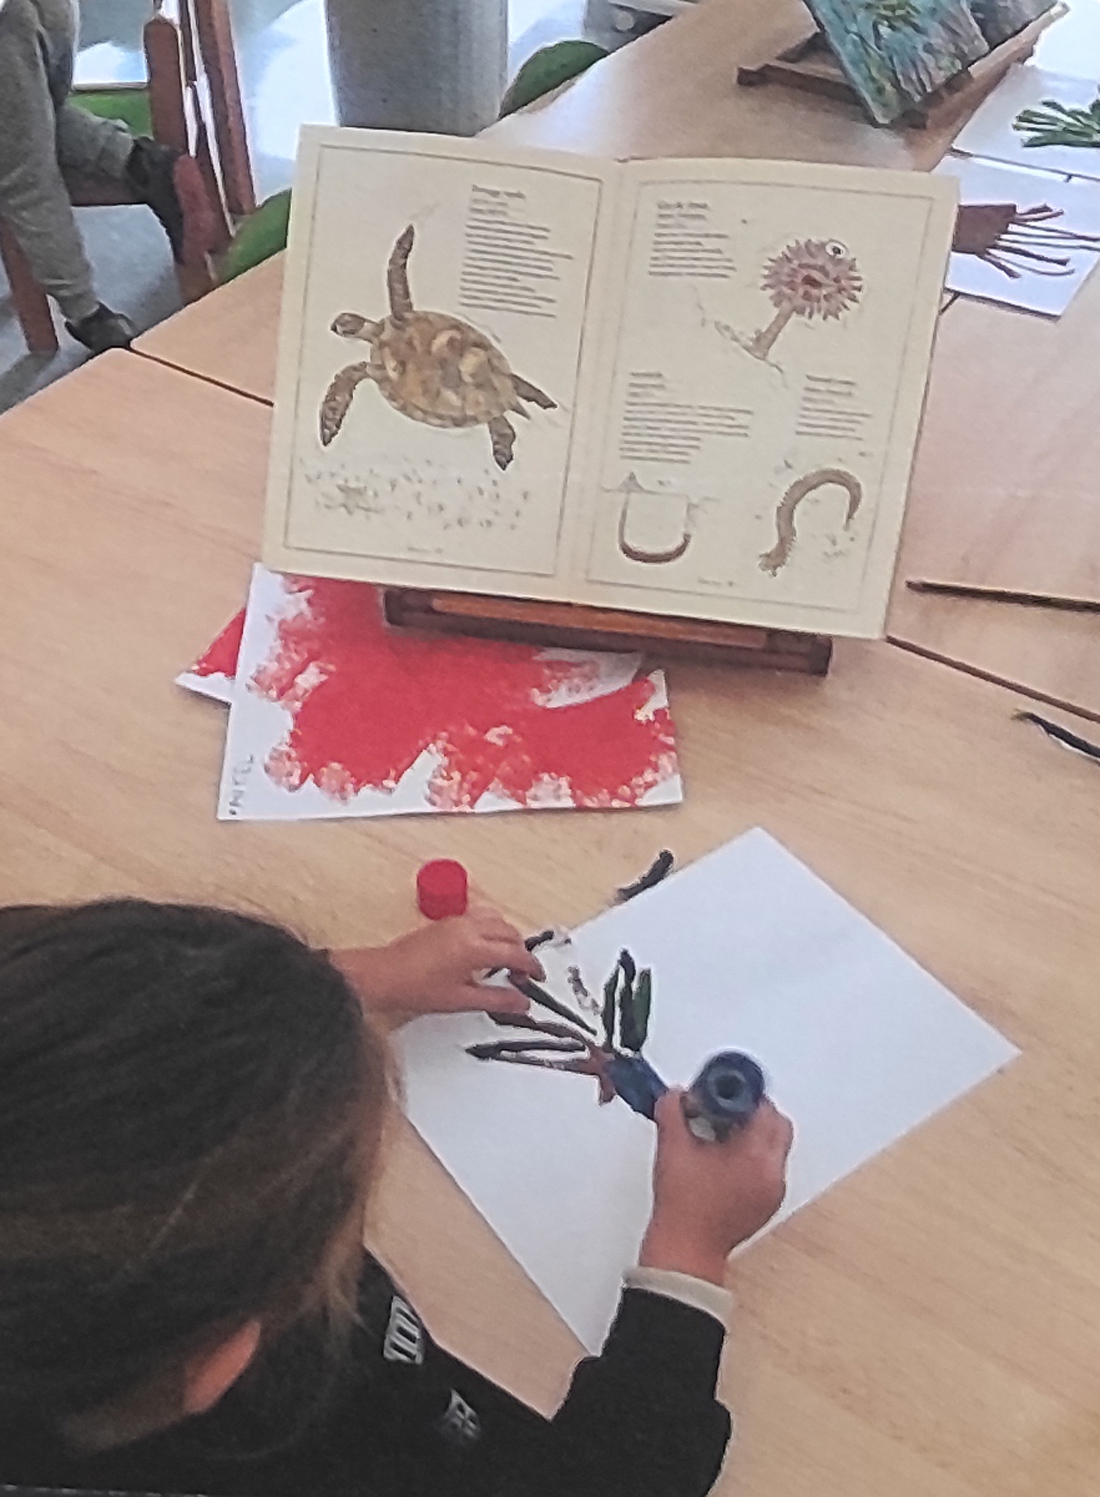 un niño, de espaldas, observa un libro abierto en el que aparecen ilustraciones de tortugas marinas, mientras sentado en su pupitre escolar pega con pegamento trozos de papel para construir su propia tortuga